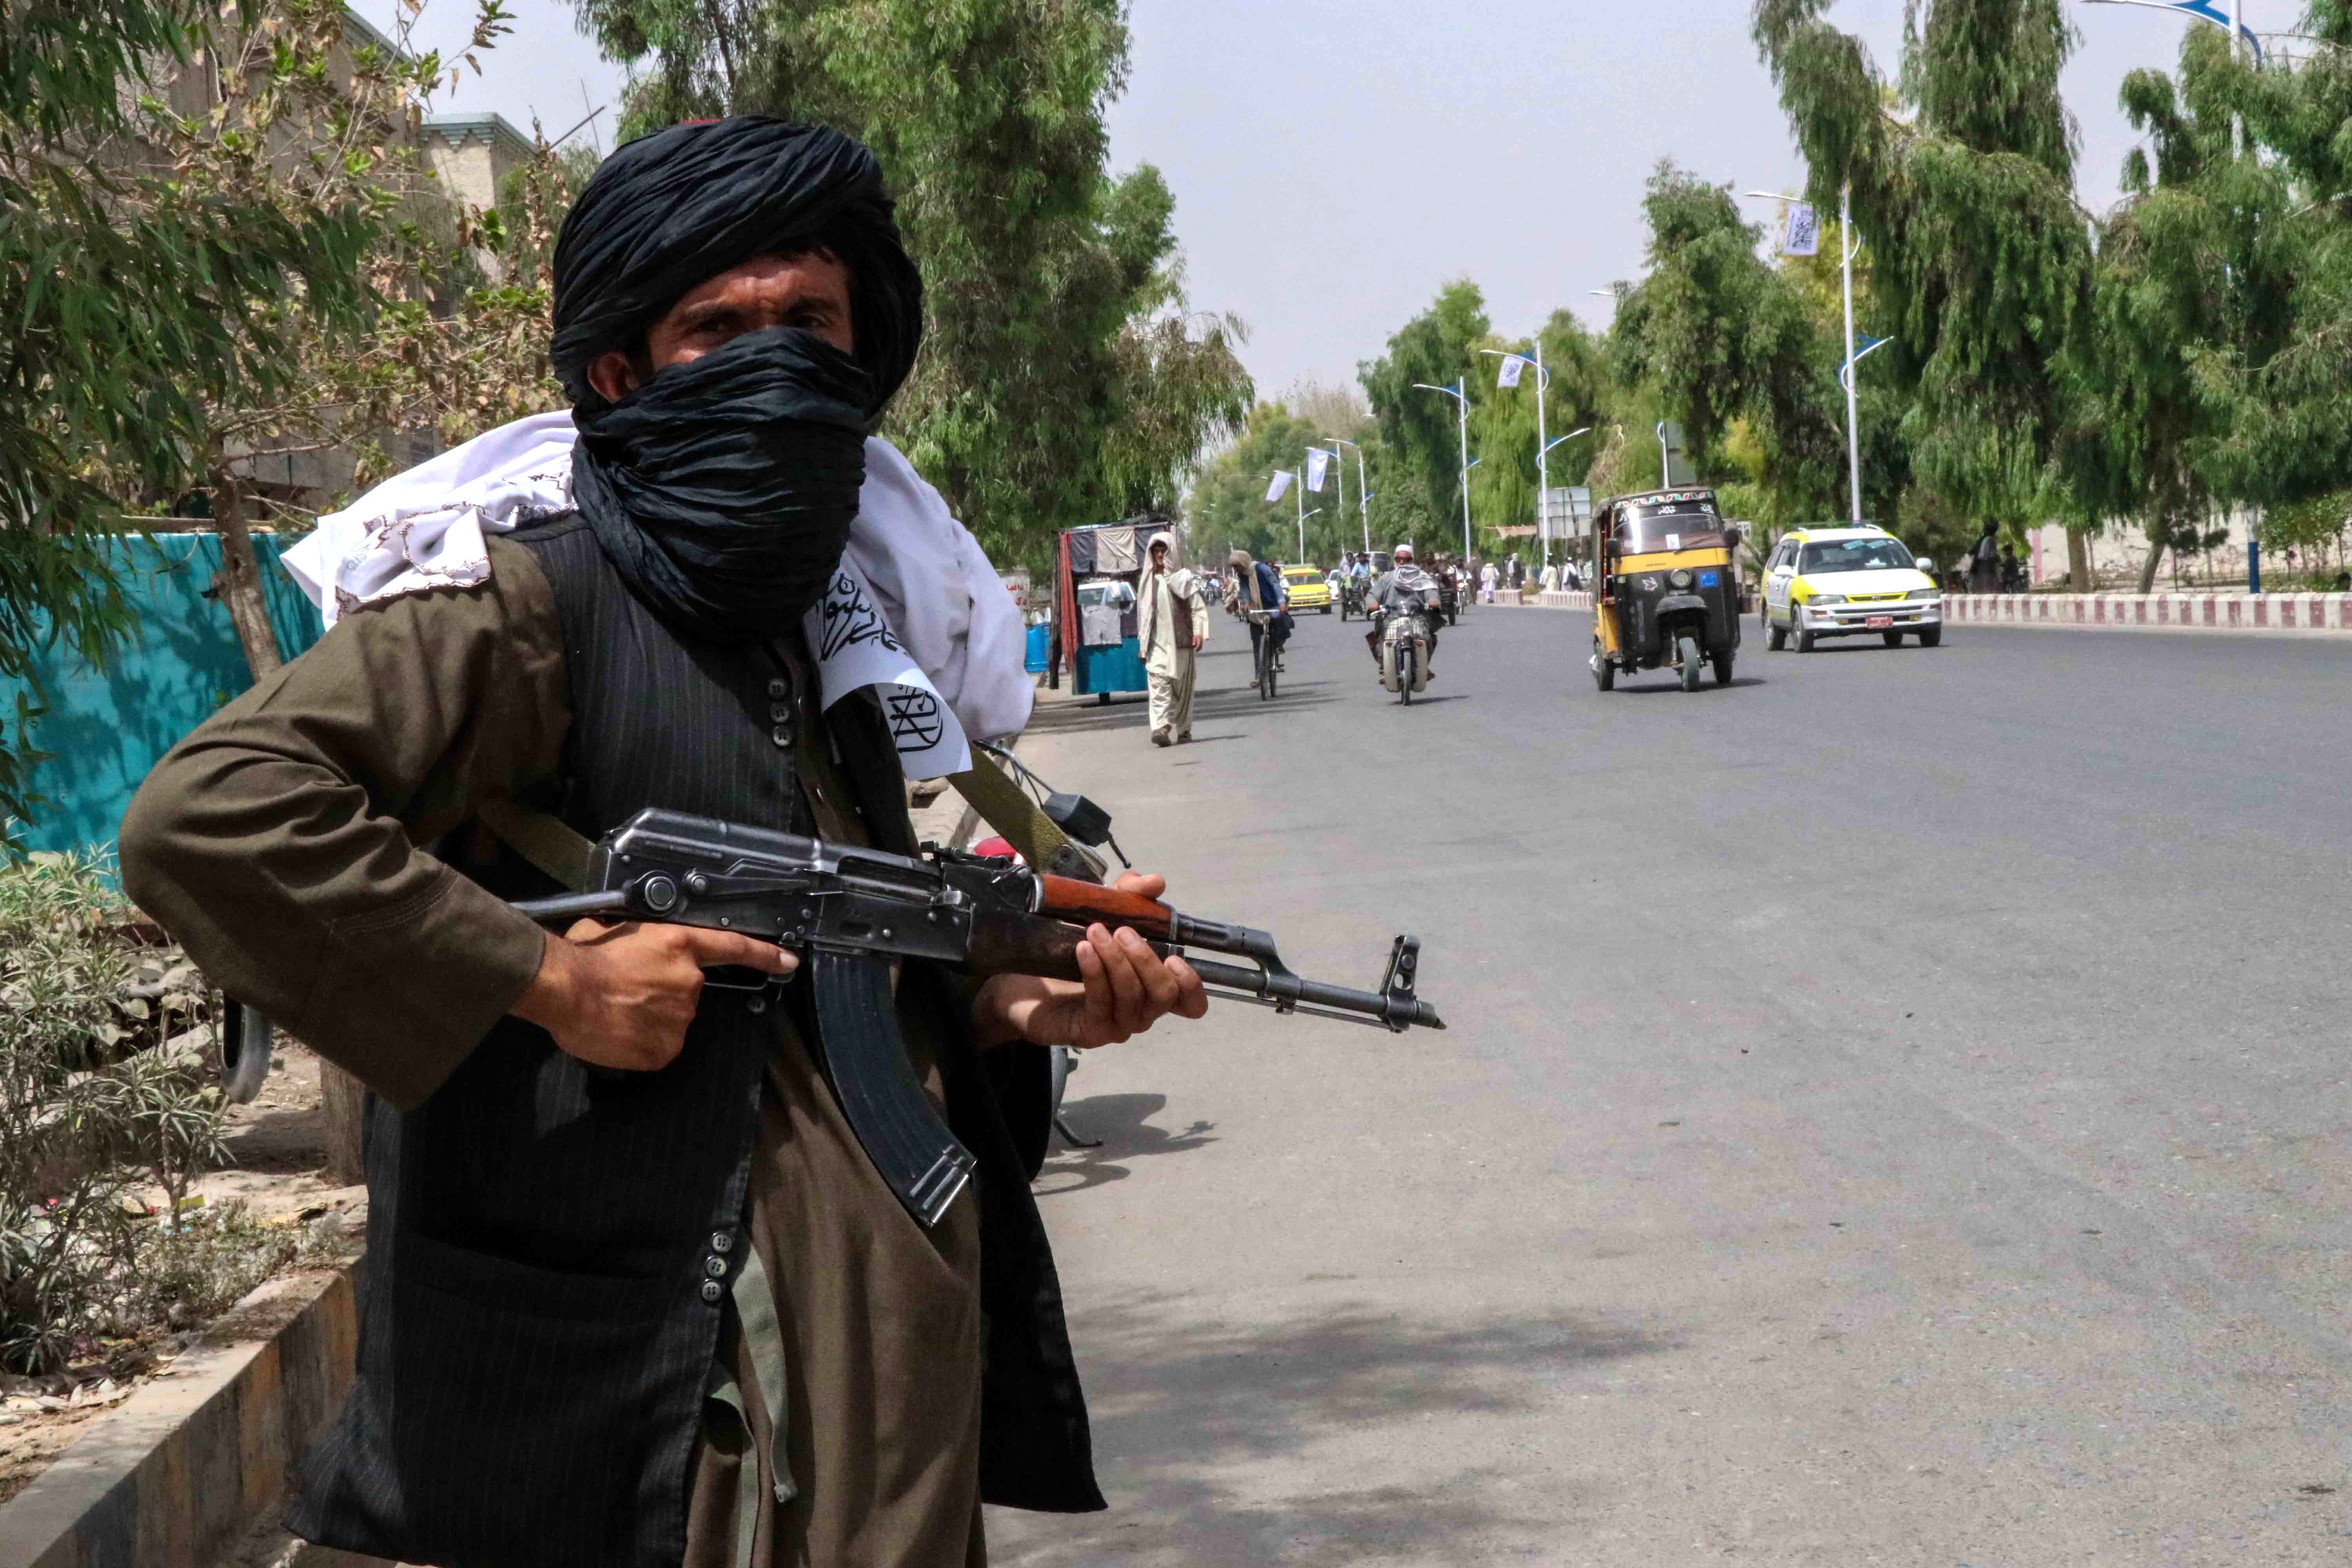 El régimen talibán continúa imponiendo sus reglas en la población afgana. (Foto Prensa Libre: EFE)